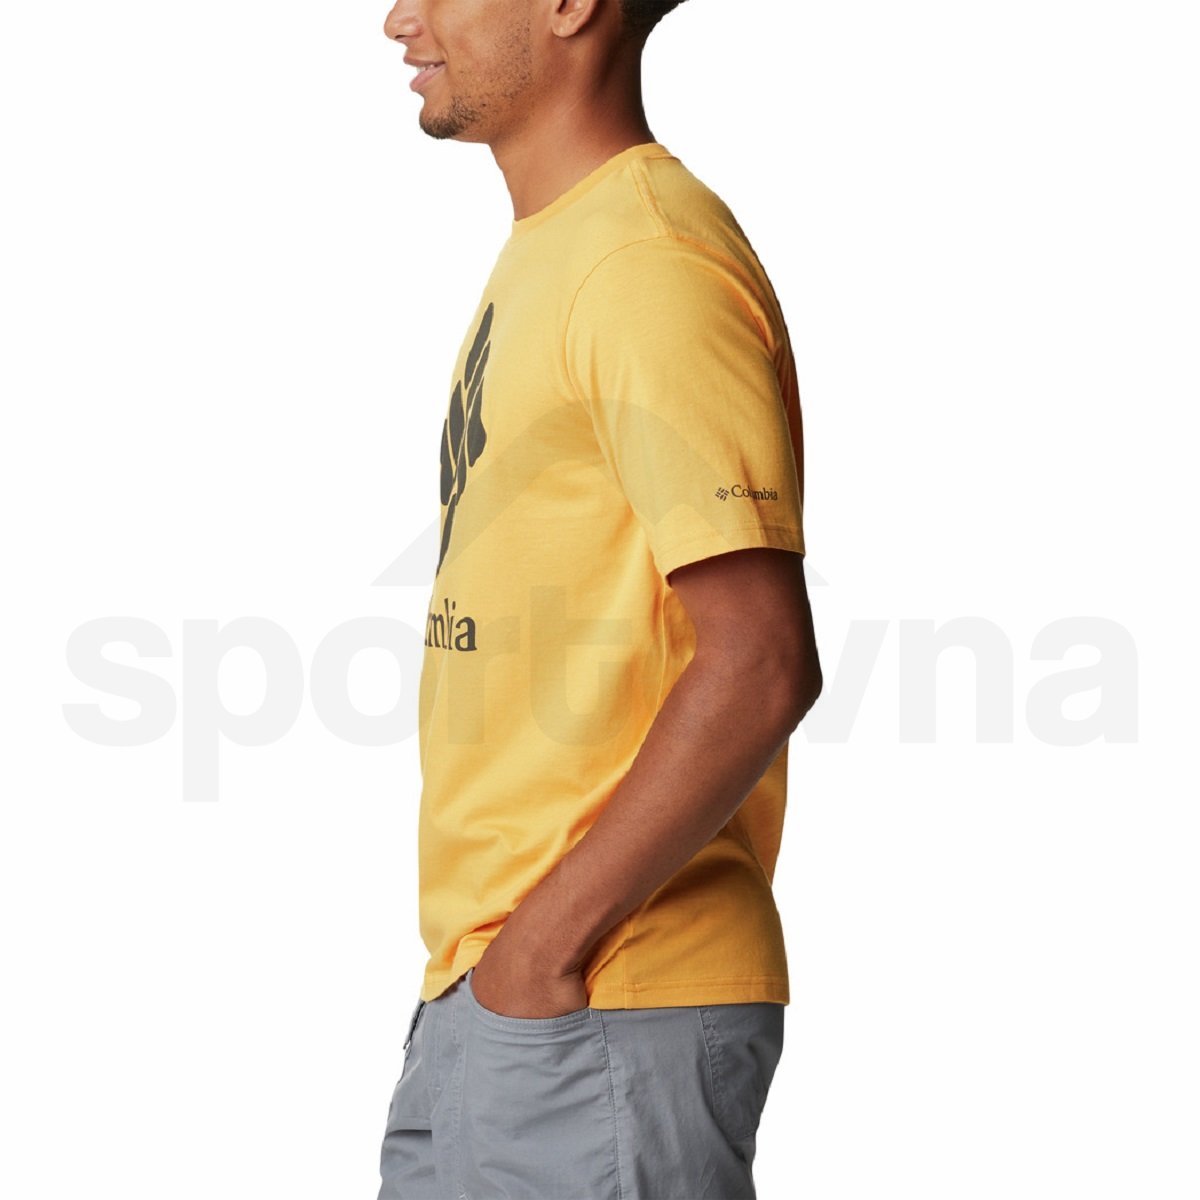 Tričko Columbia CSC Basic Logo™ Short Sleeve M - žlutá